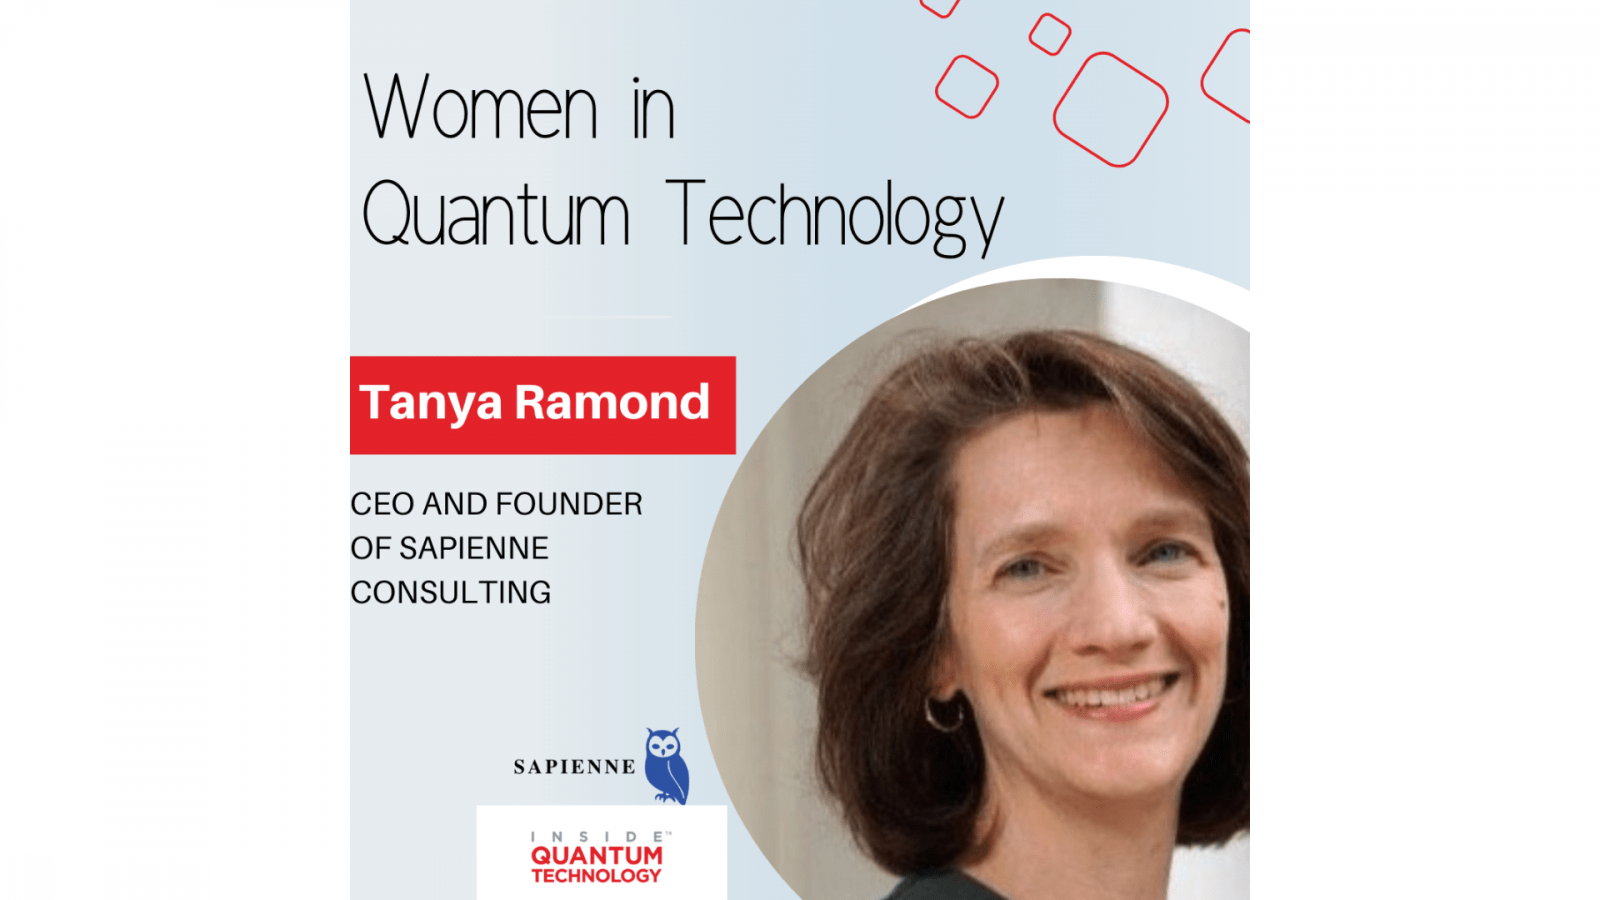 Tanya Ramond, ettevõtte Sapienne Consulting tegevjuht ja asutaja, räägib oma ajaloost ja teekonnast kvanttööstusesse.